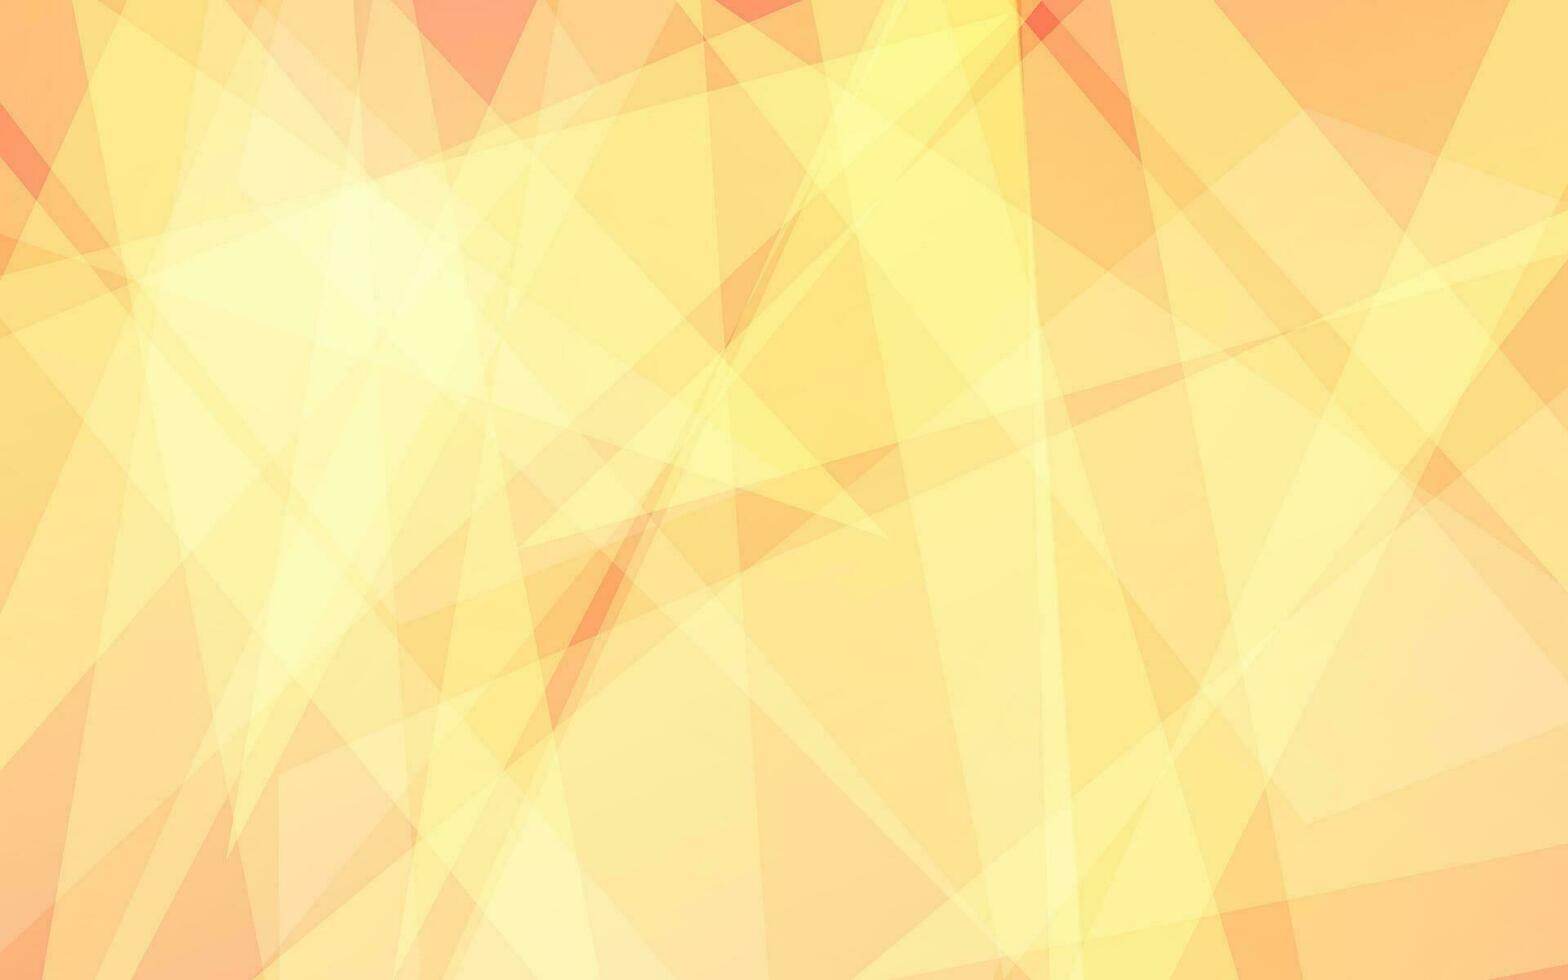 abstrakt transparant gul ljus bakgrund vetor vektor